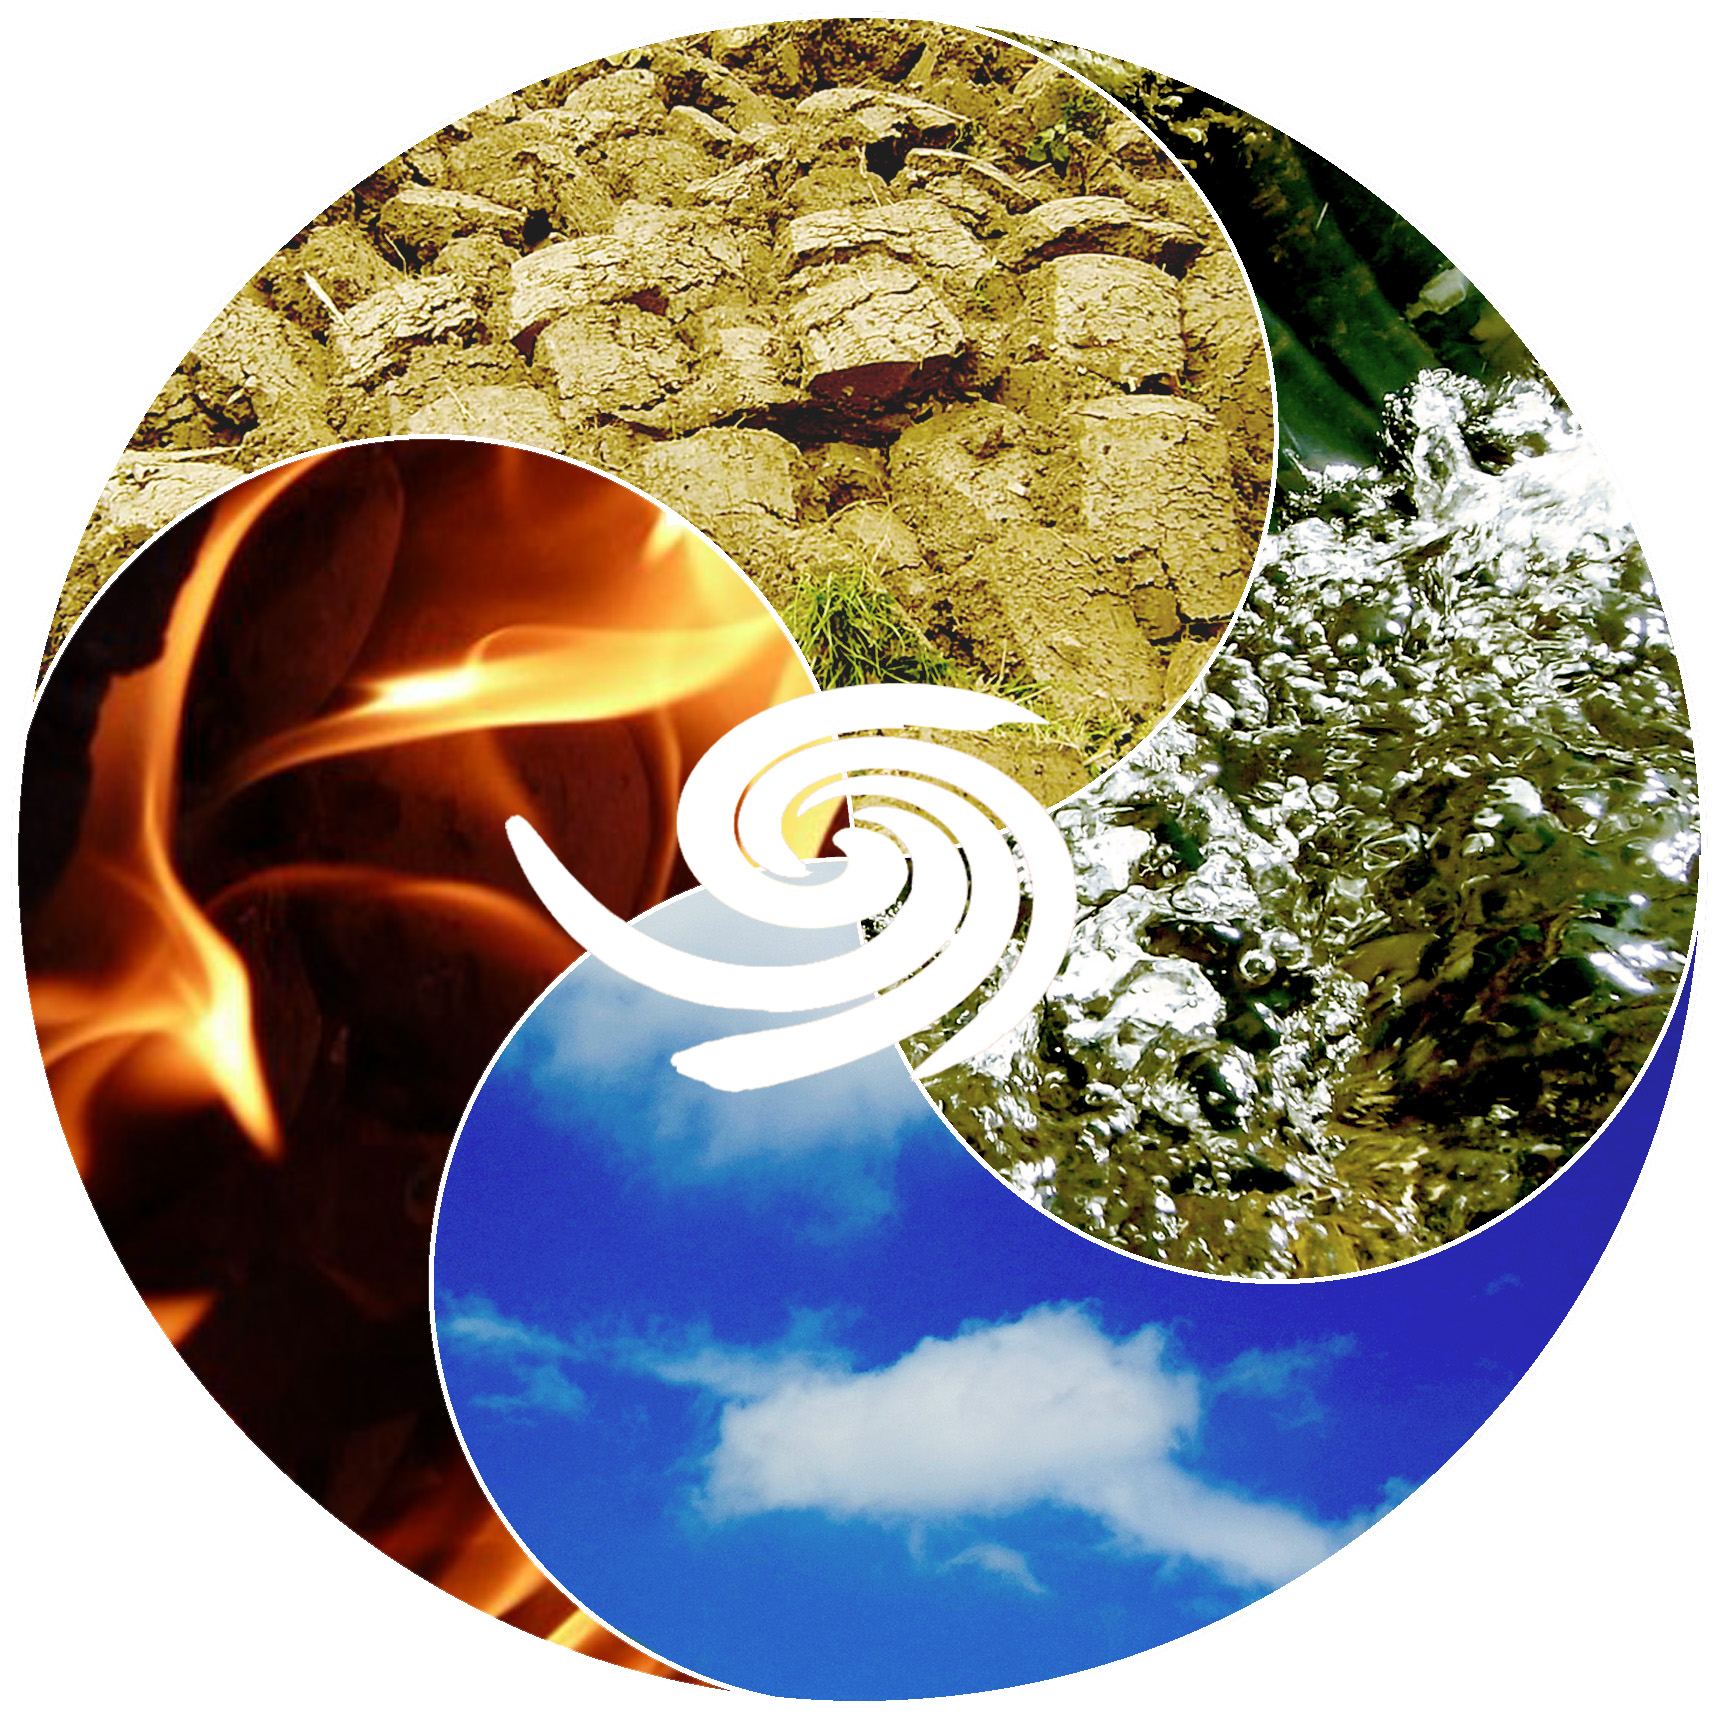 Die 4 Elemente Feuer, Wasser, Luft und Erde, Grafik (C) Irmgard Brottrager